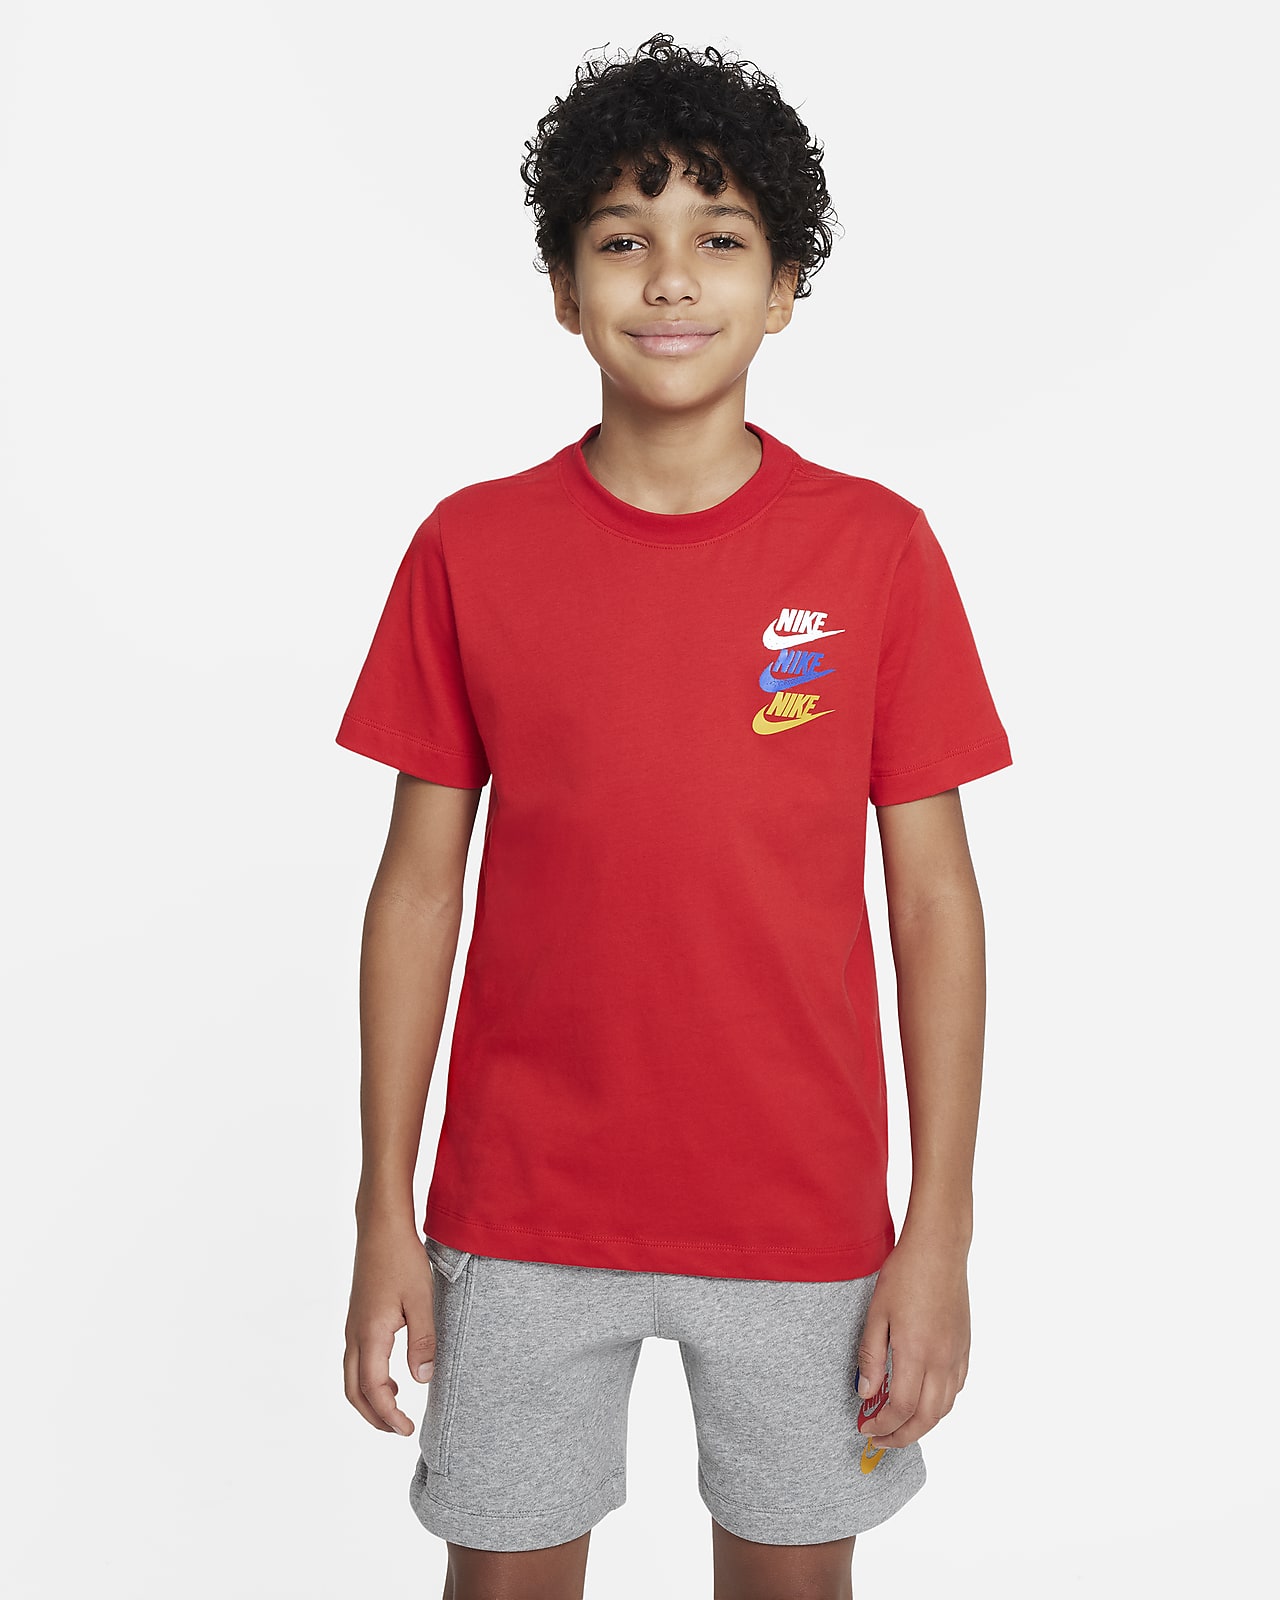 Nike Sportswear Standard Issue Older Kids' (Boys') T-shirt